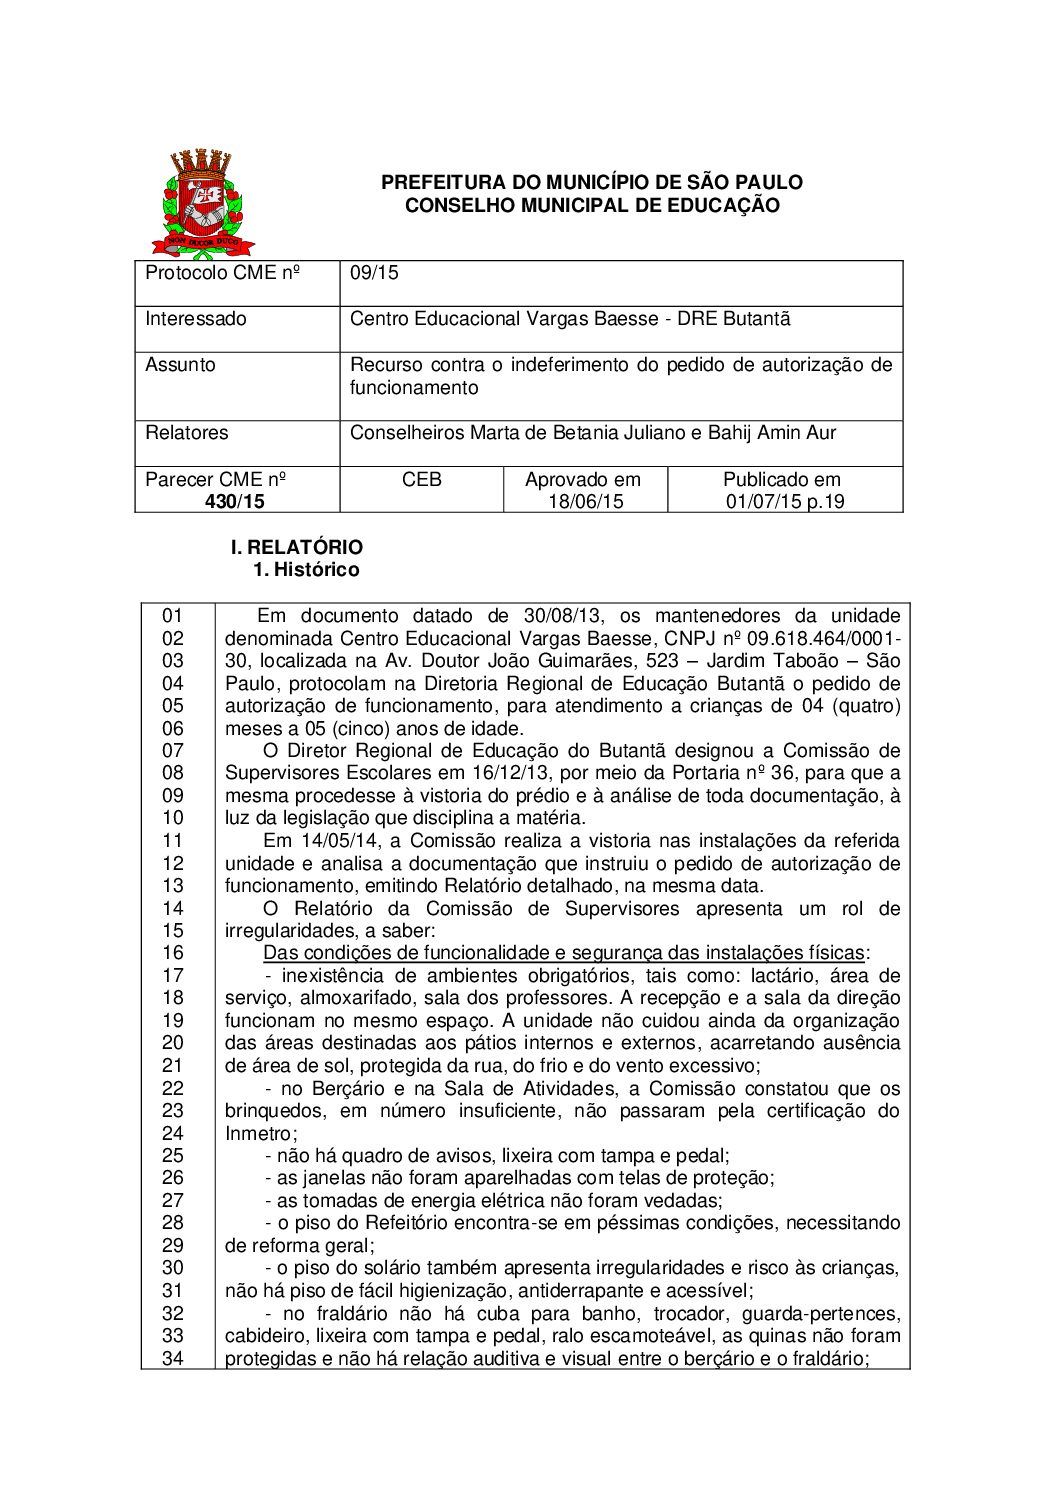 Parecer CME nº 430/2015 - Centro Educacional Vargas Baesse (DRE Butantã) - Recurso contra o indeferimento do pedido de autorização de funcionamento 